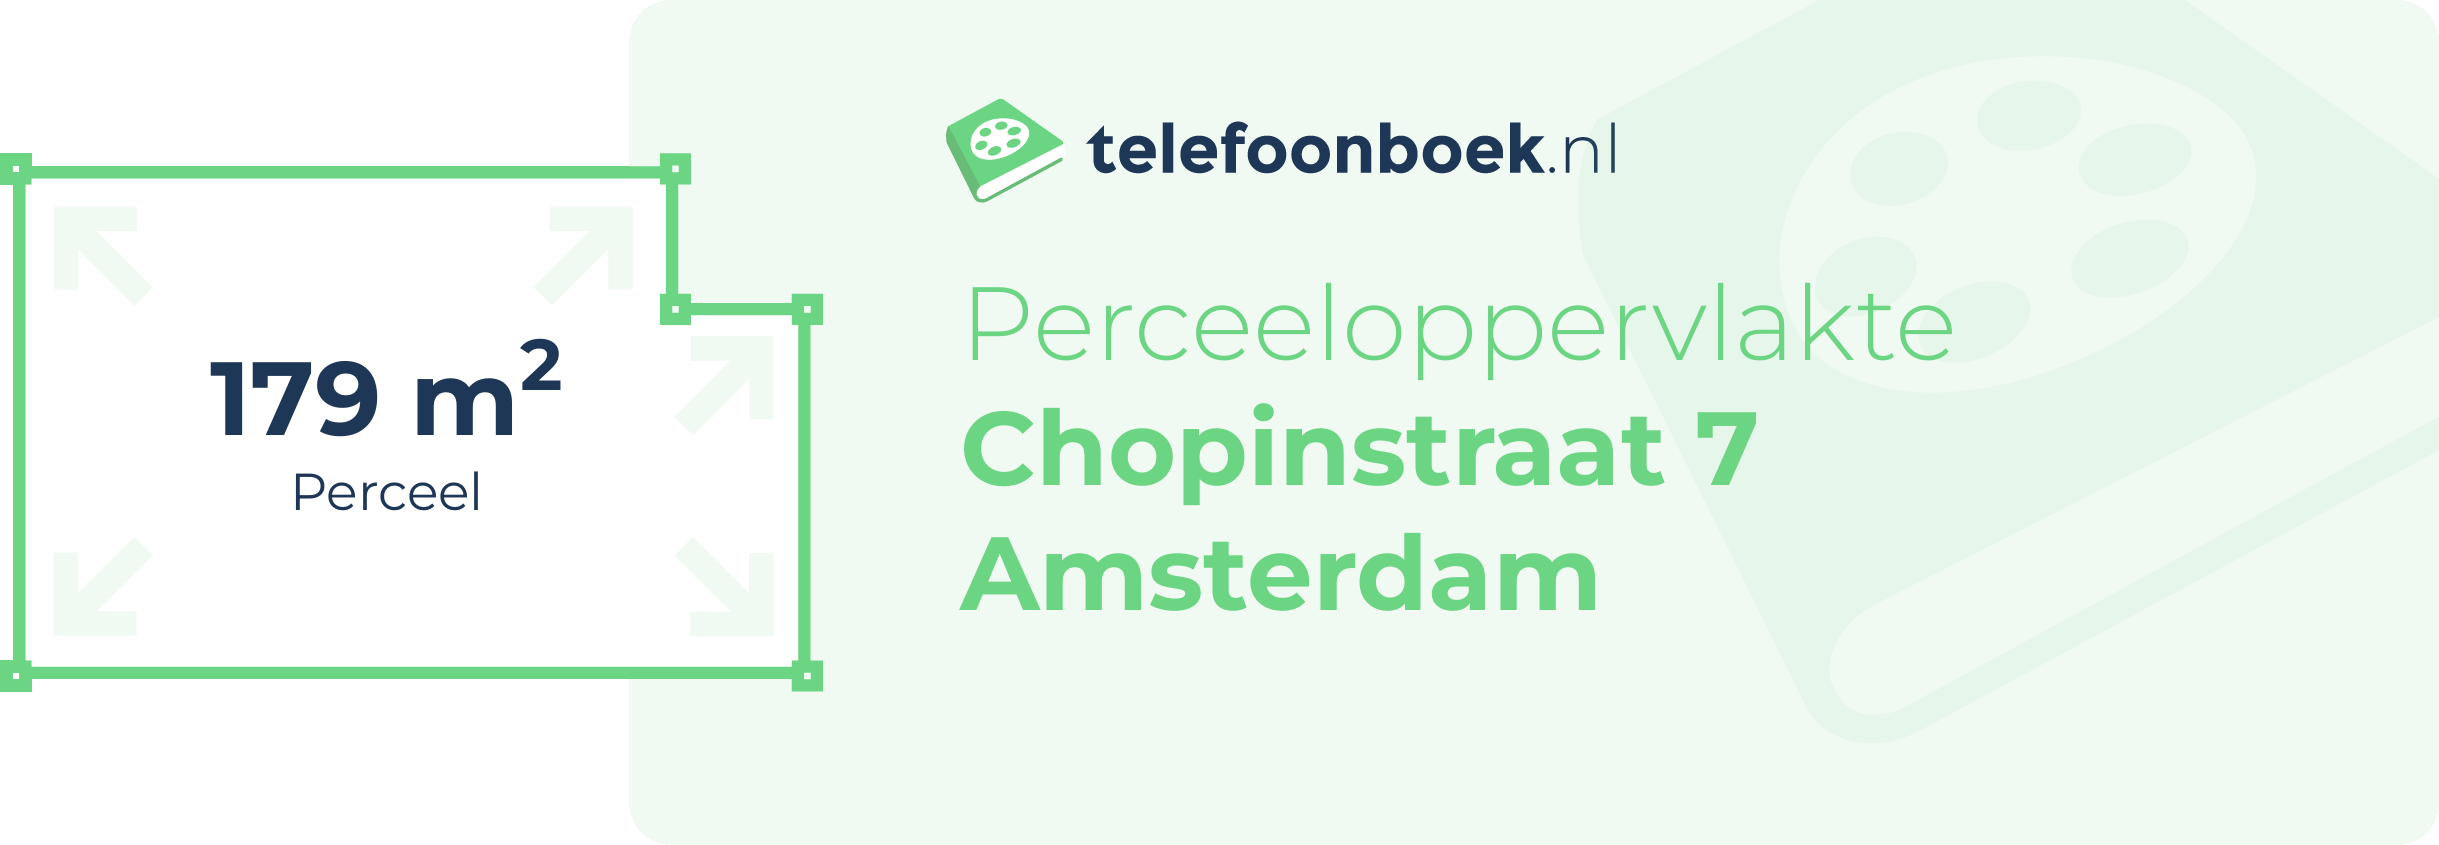 Perceeloppervlakte Chopinstraat 7 Amsterdam